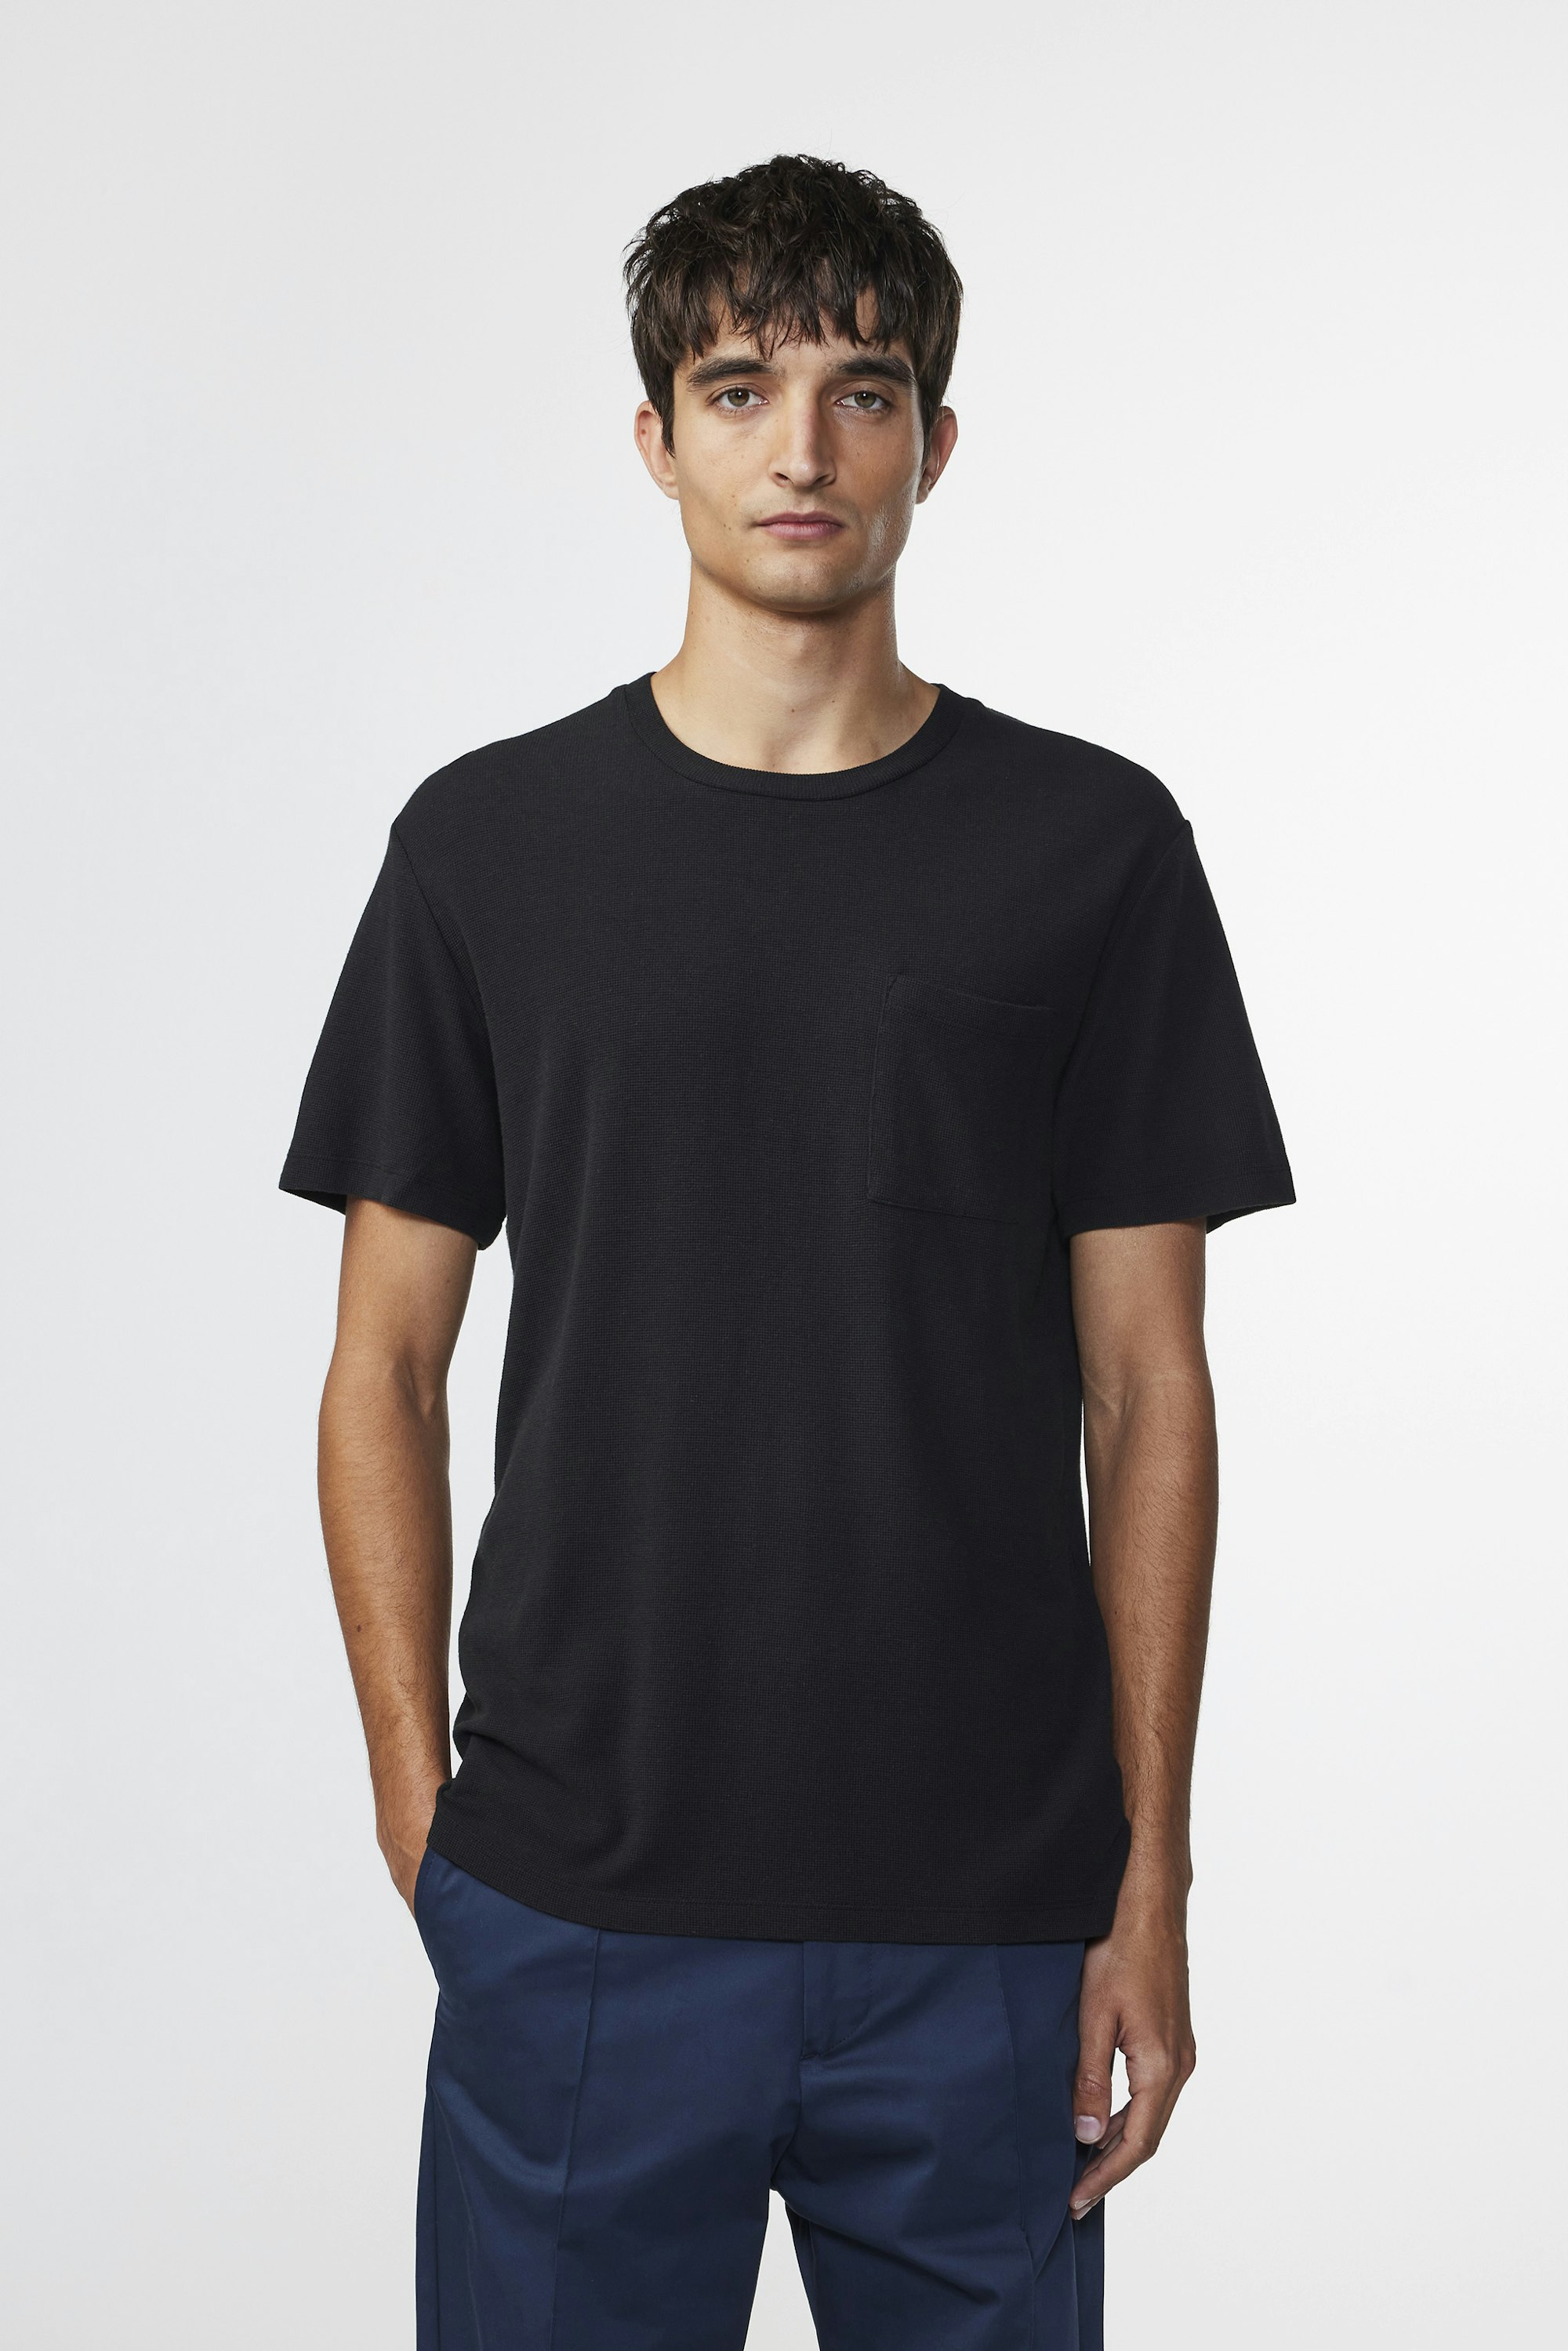 at Clive - Buy - t-shirt men\'s 3323 online Black